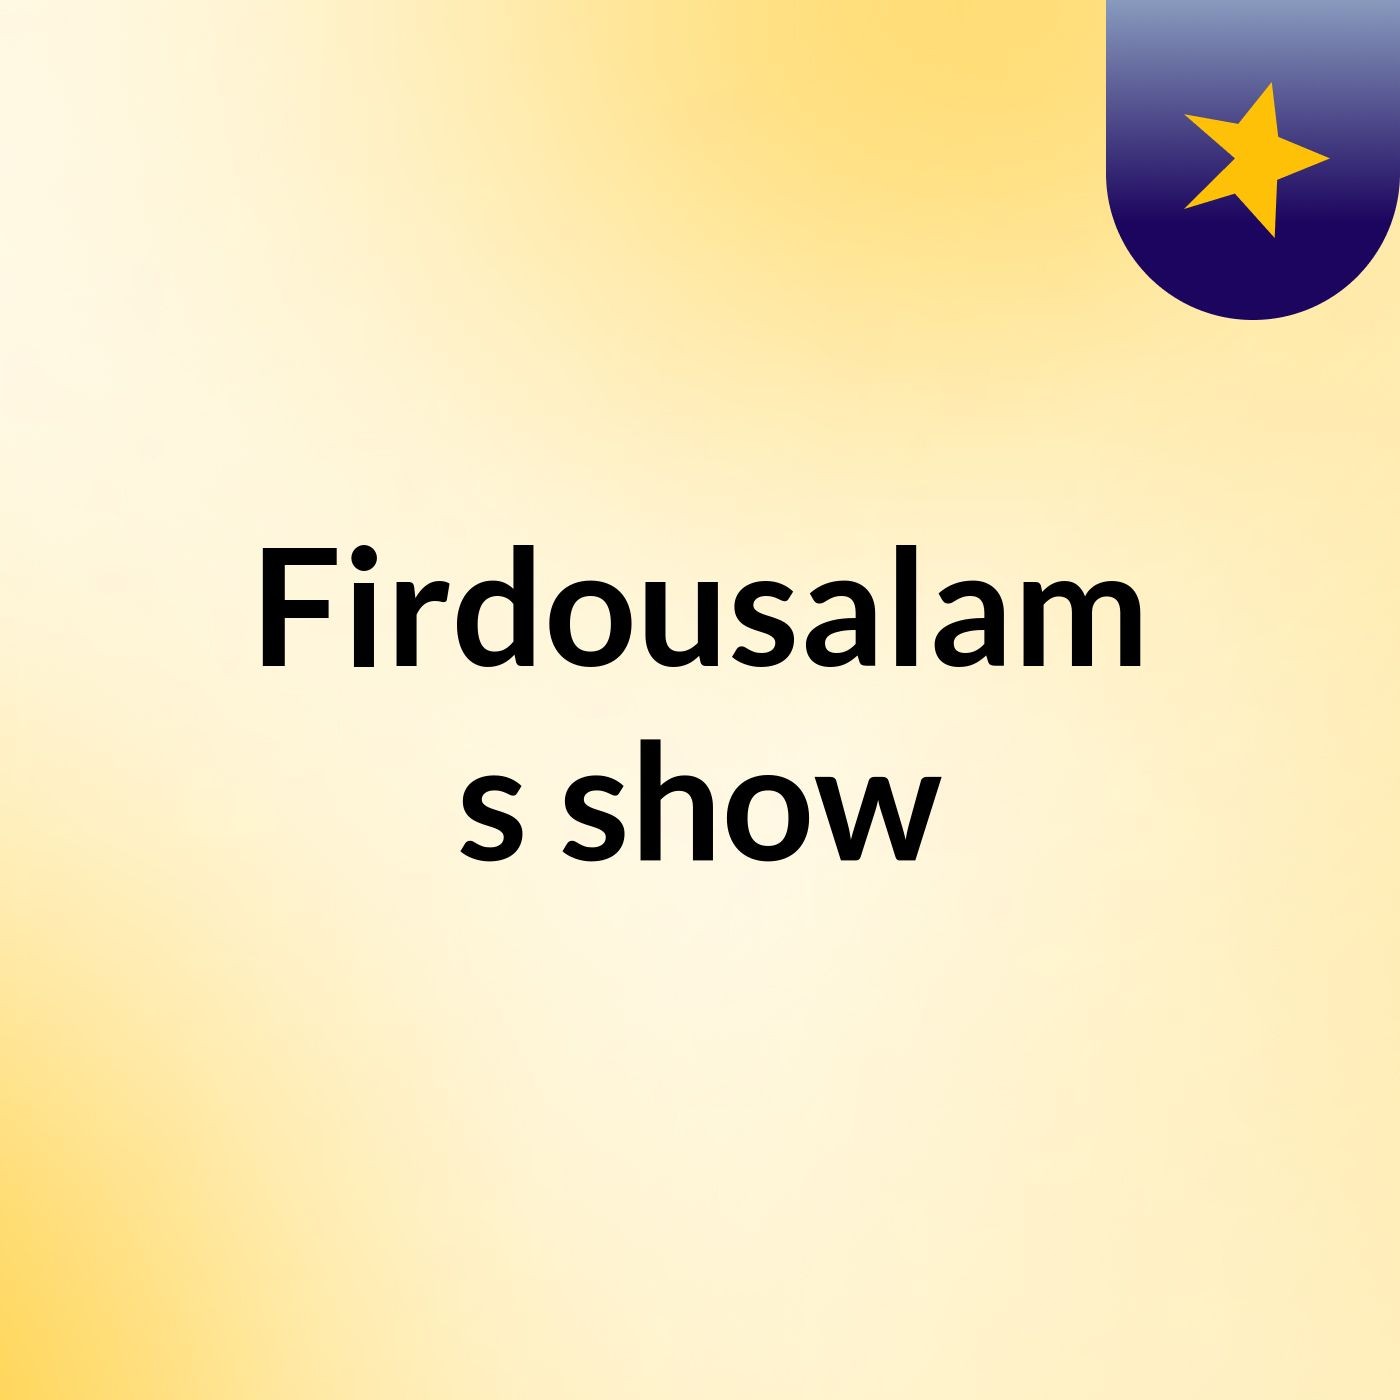 Firdousalam's show